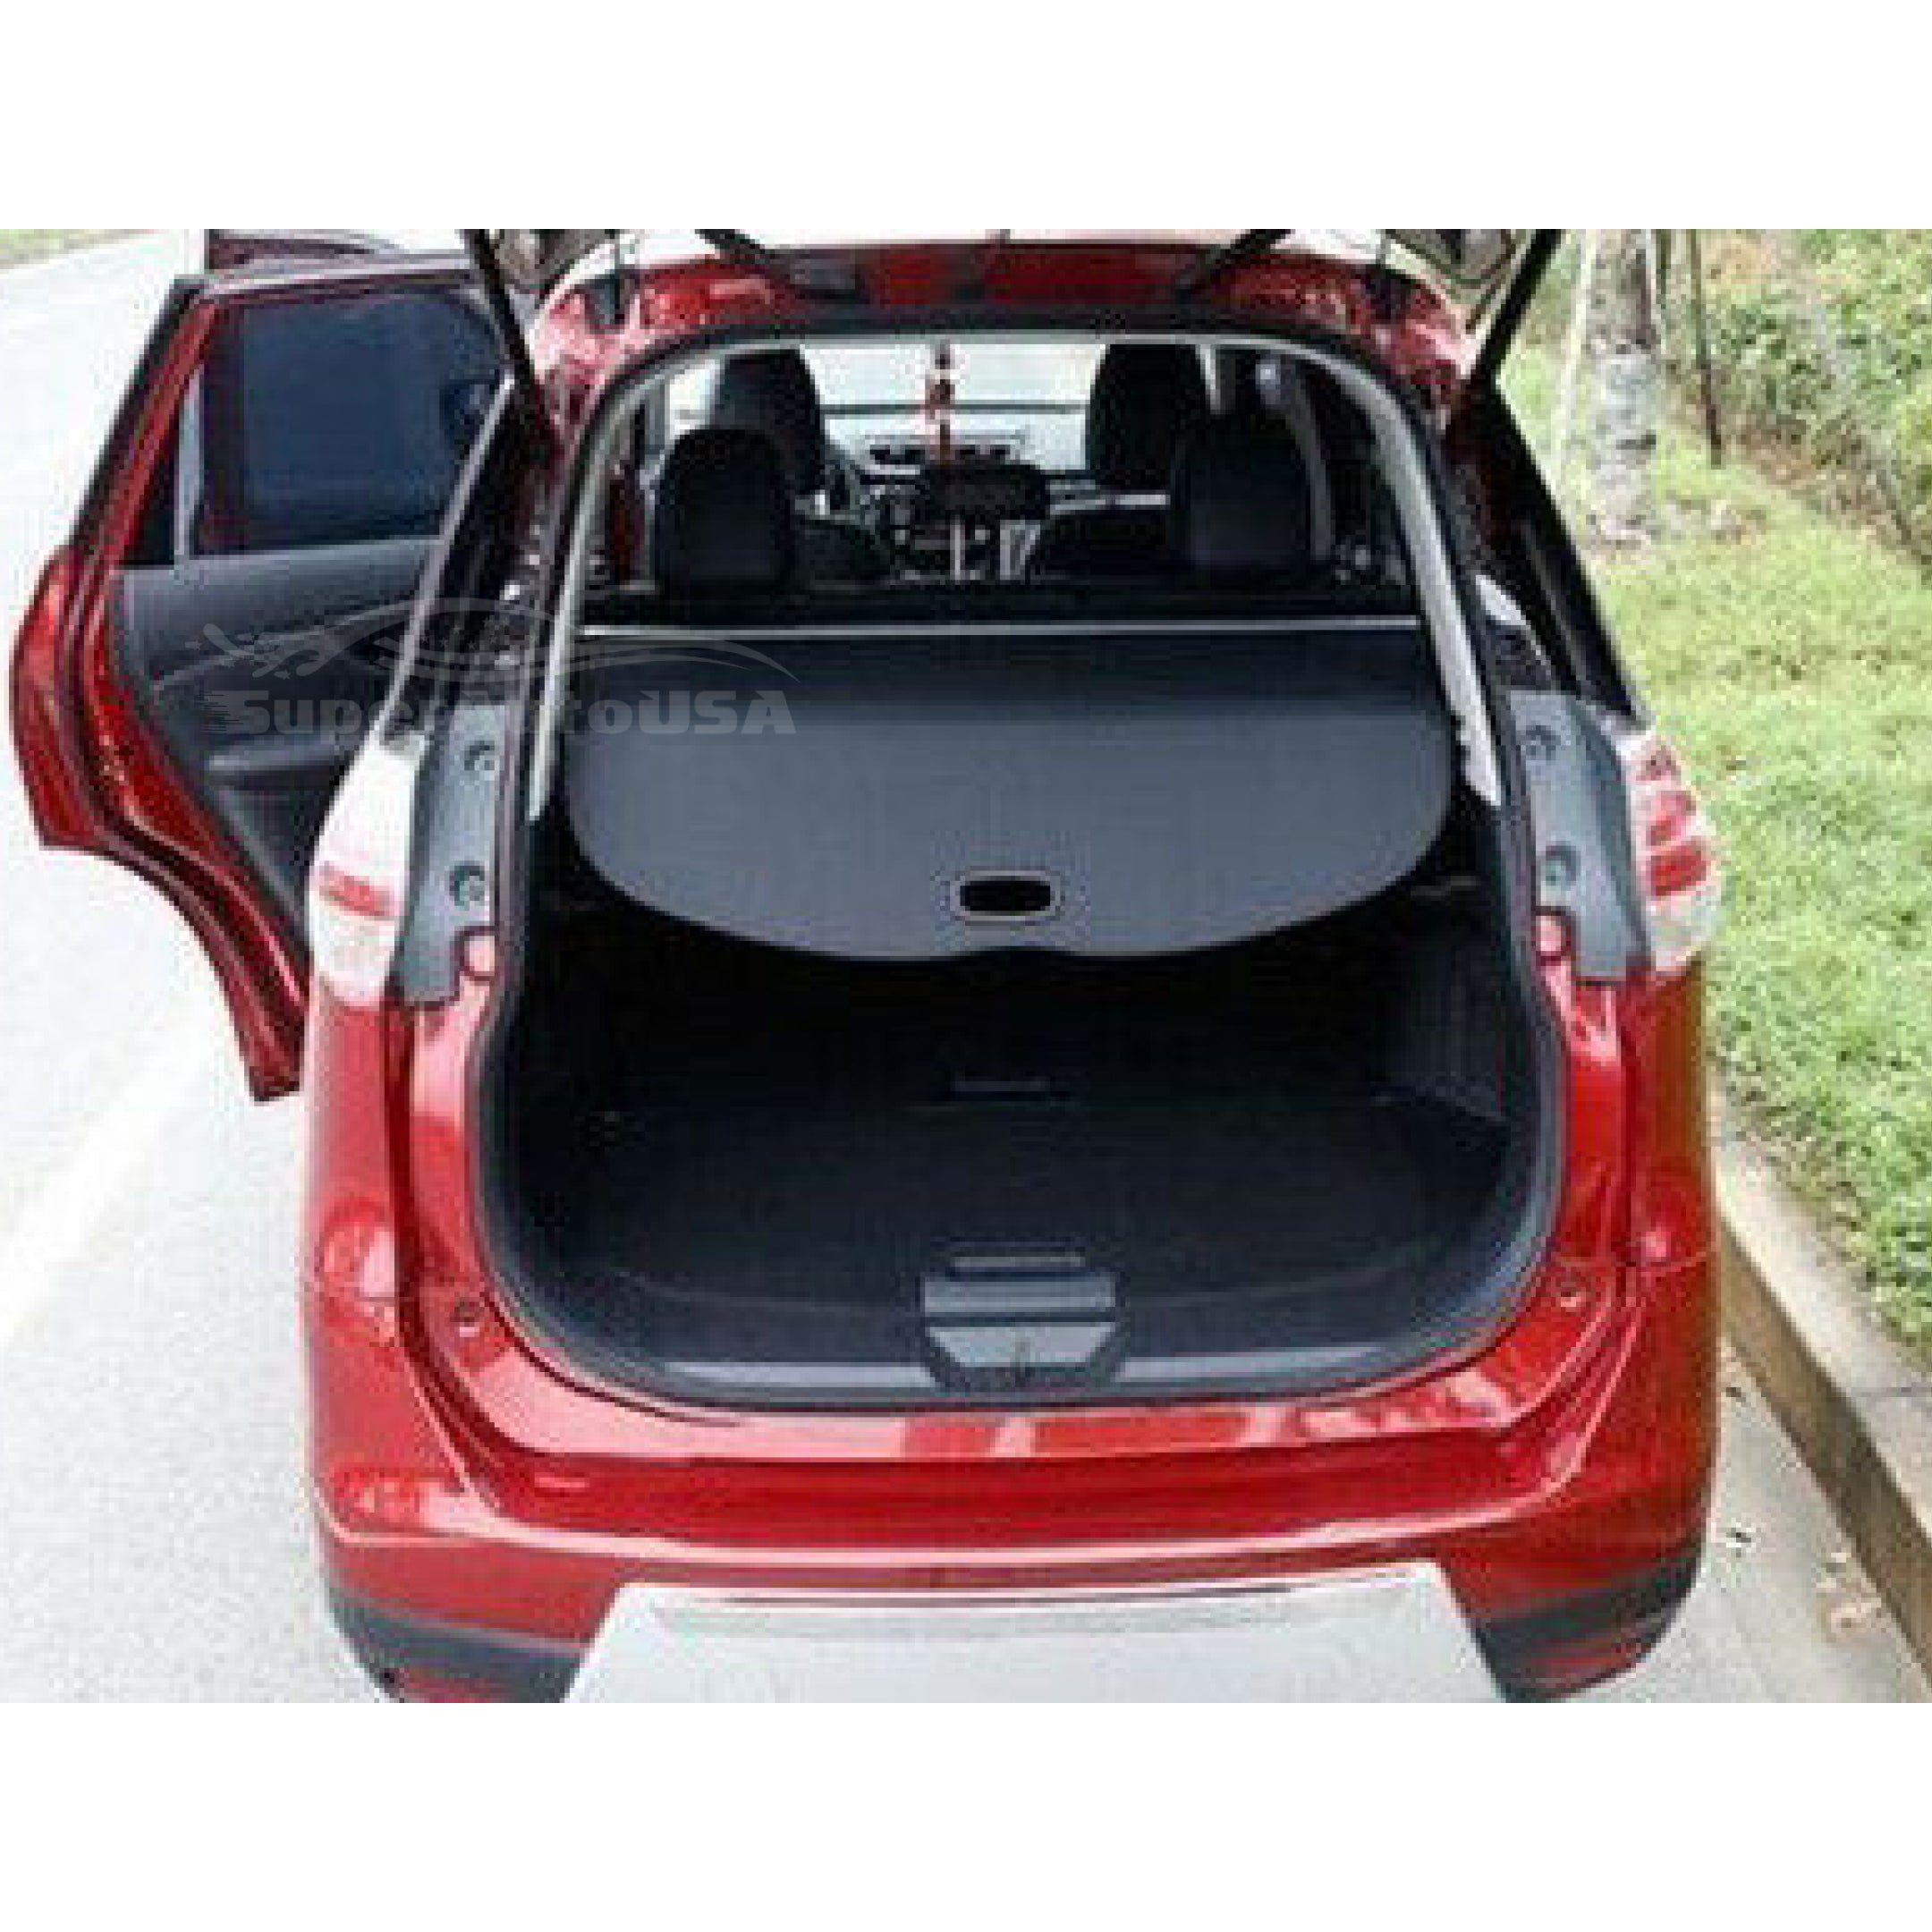 Se adapta a la cubierta de carga Tonneau retráctil del maletero trasero del equipaje Subaru XV 2019-2021 (negro) - 0